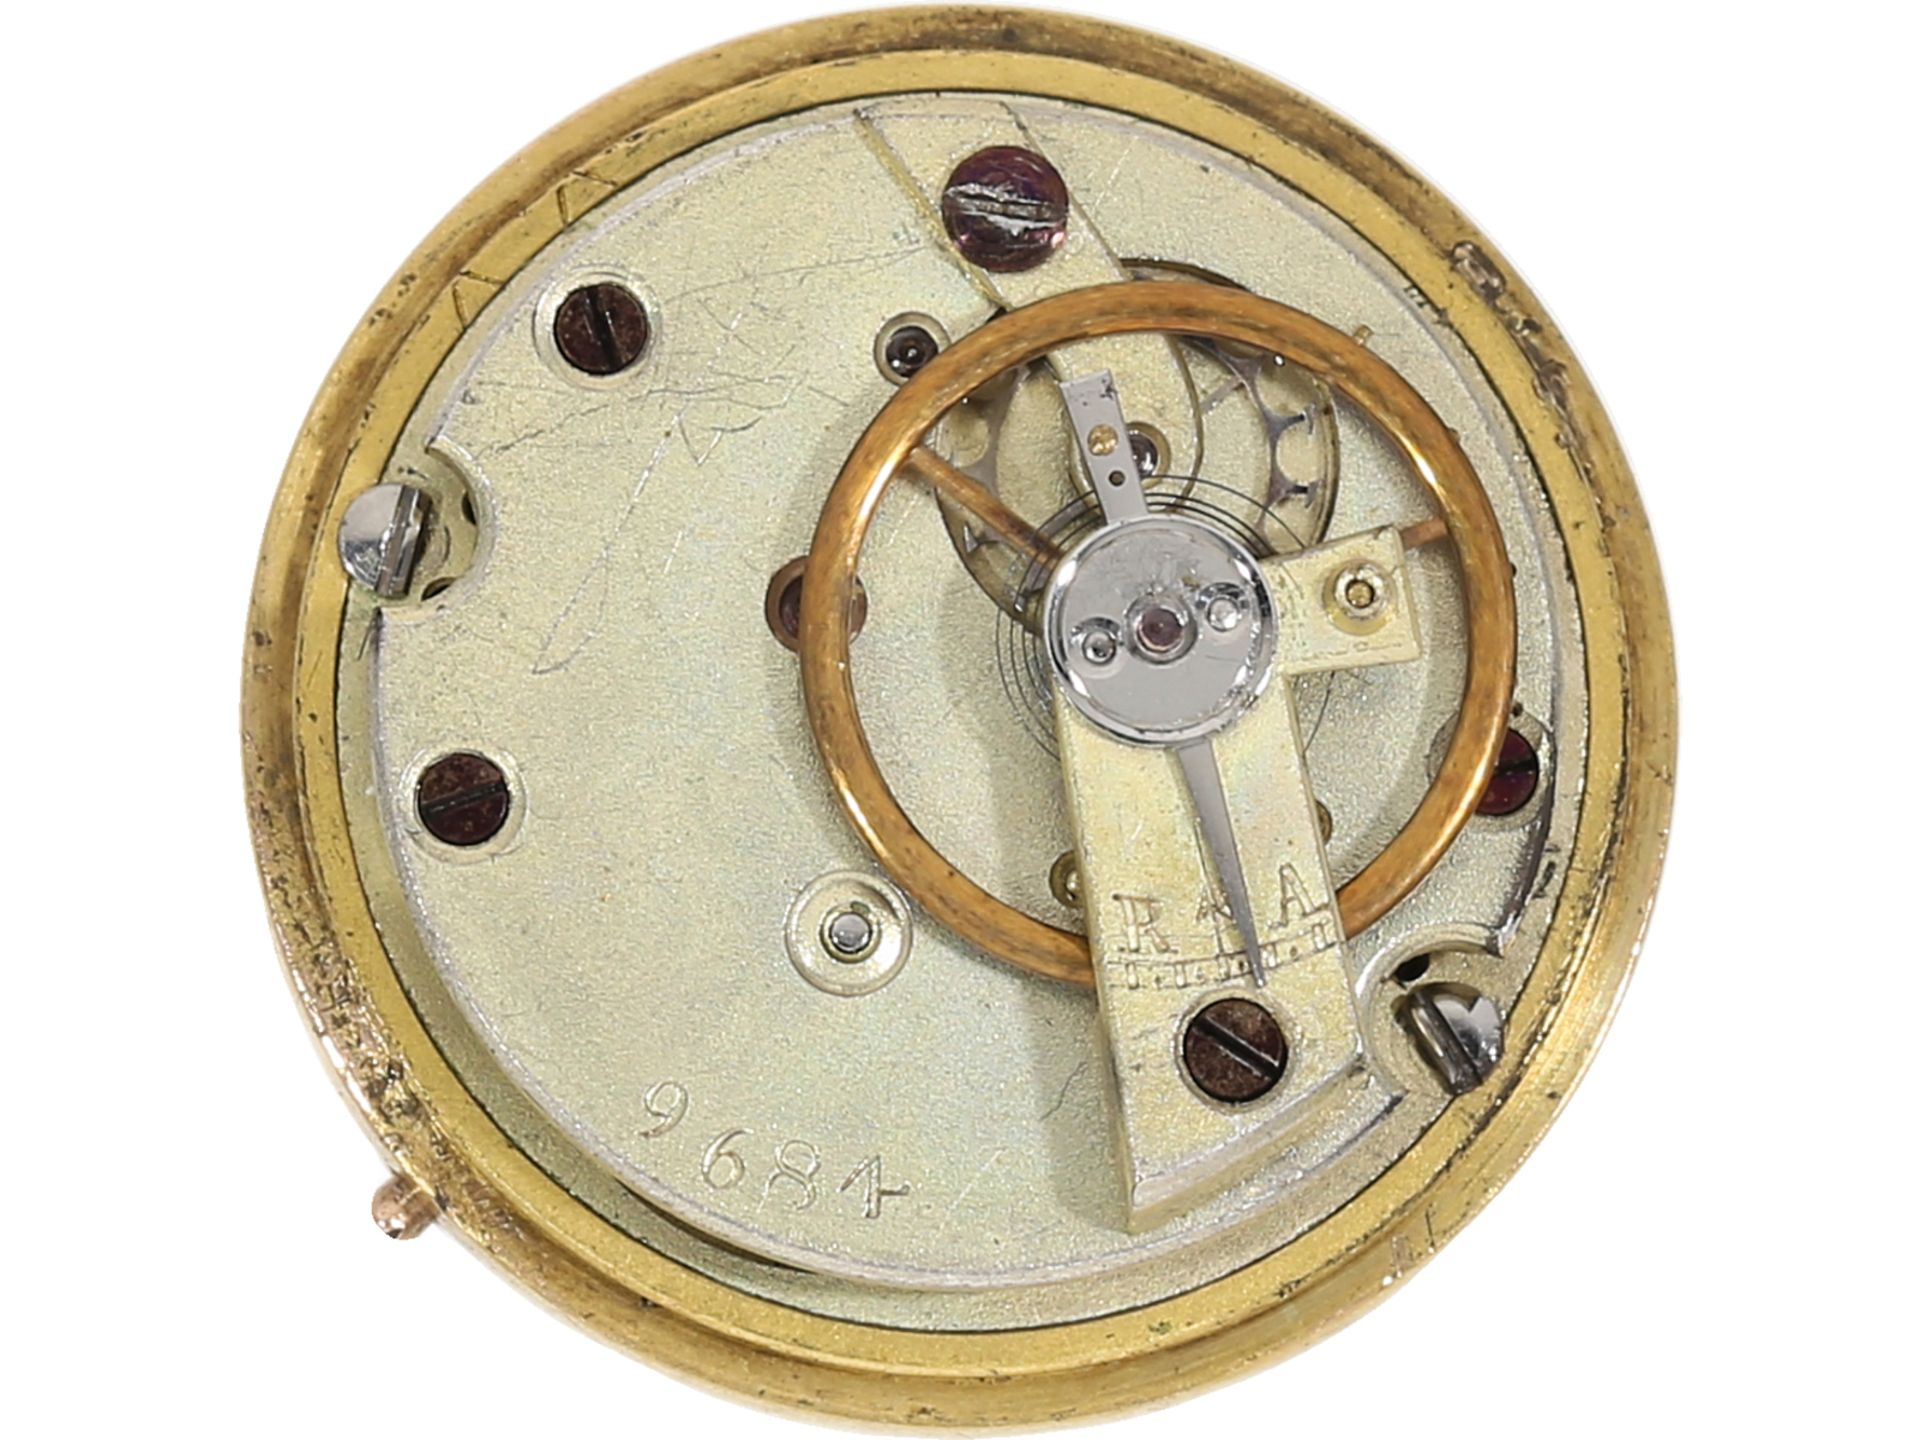 Anhängeuhr: "Boule de Geneve" in sehr seltener Qualität mit Diamantbesatz, 1860: Ca. Ø21,5mm, ca. - Bild 4 aus 4